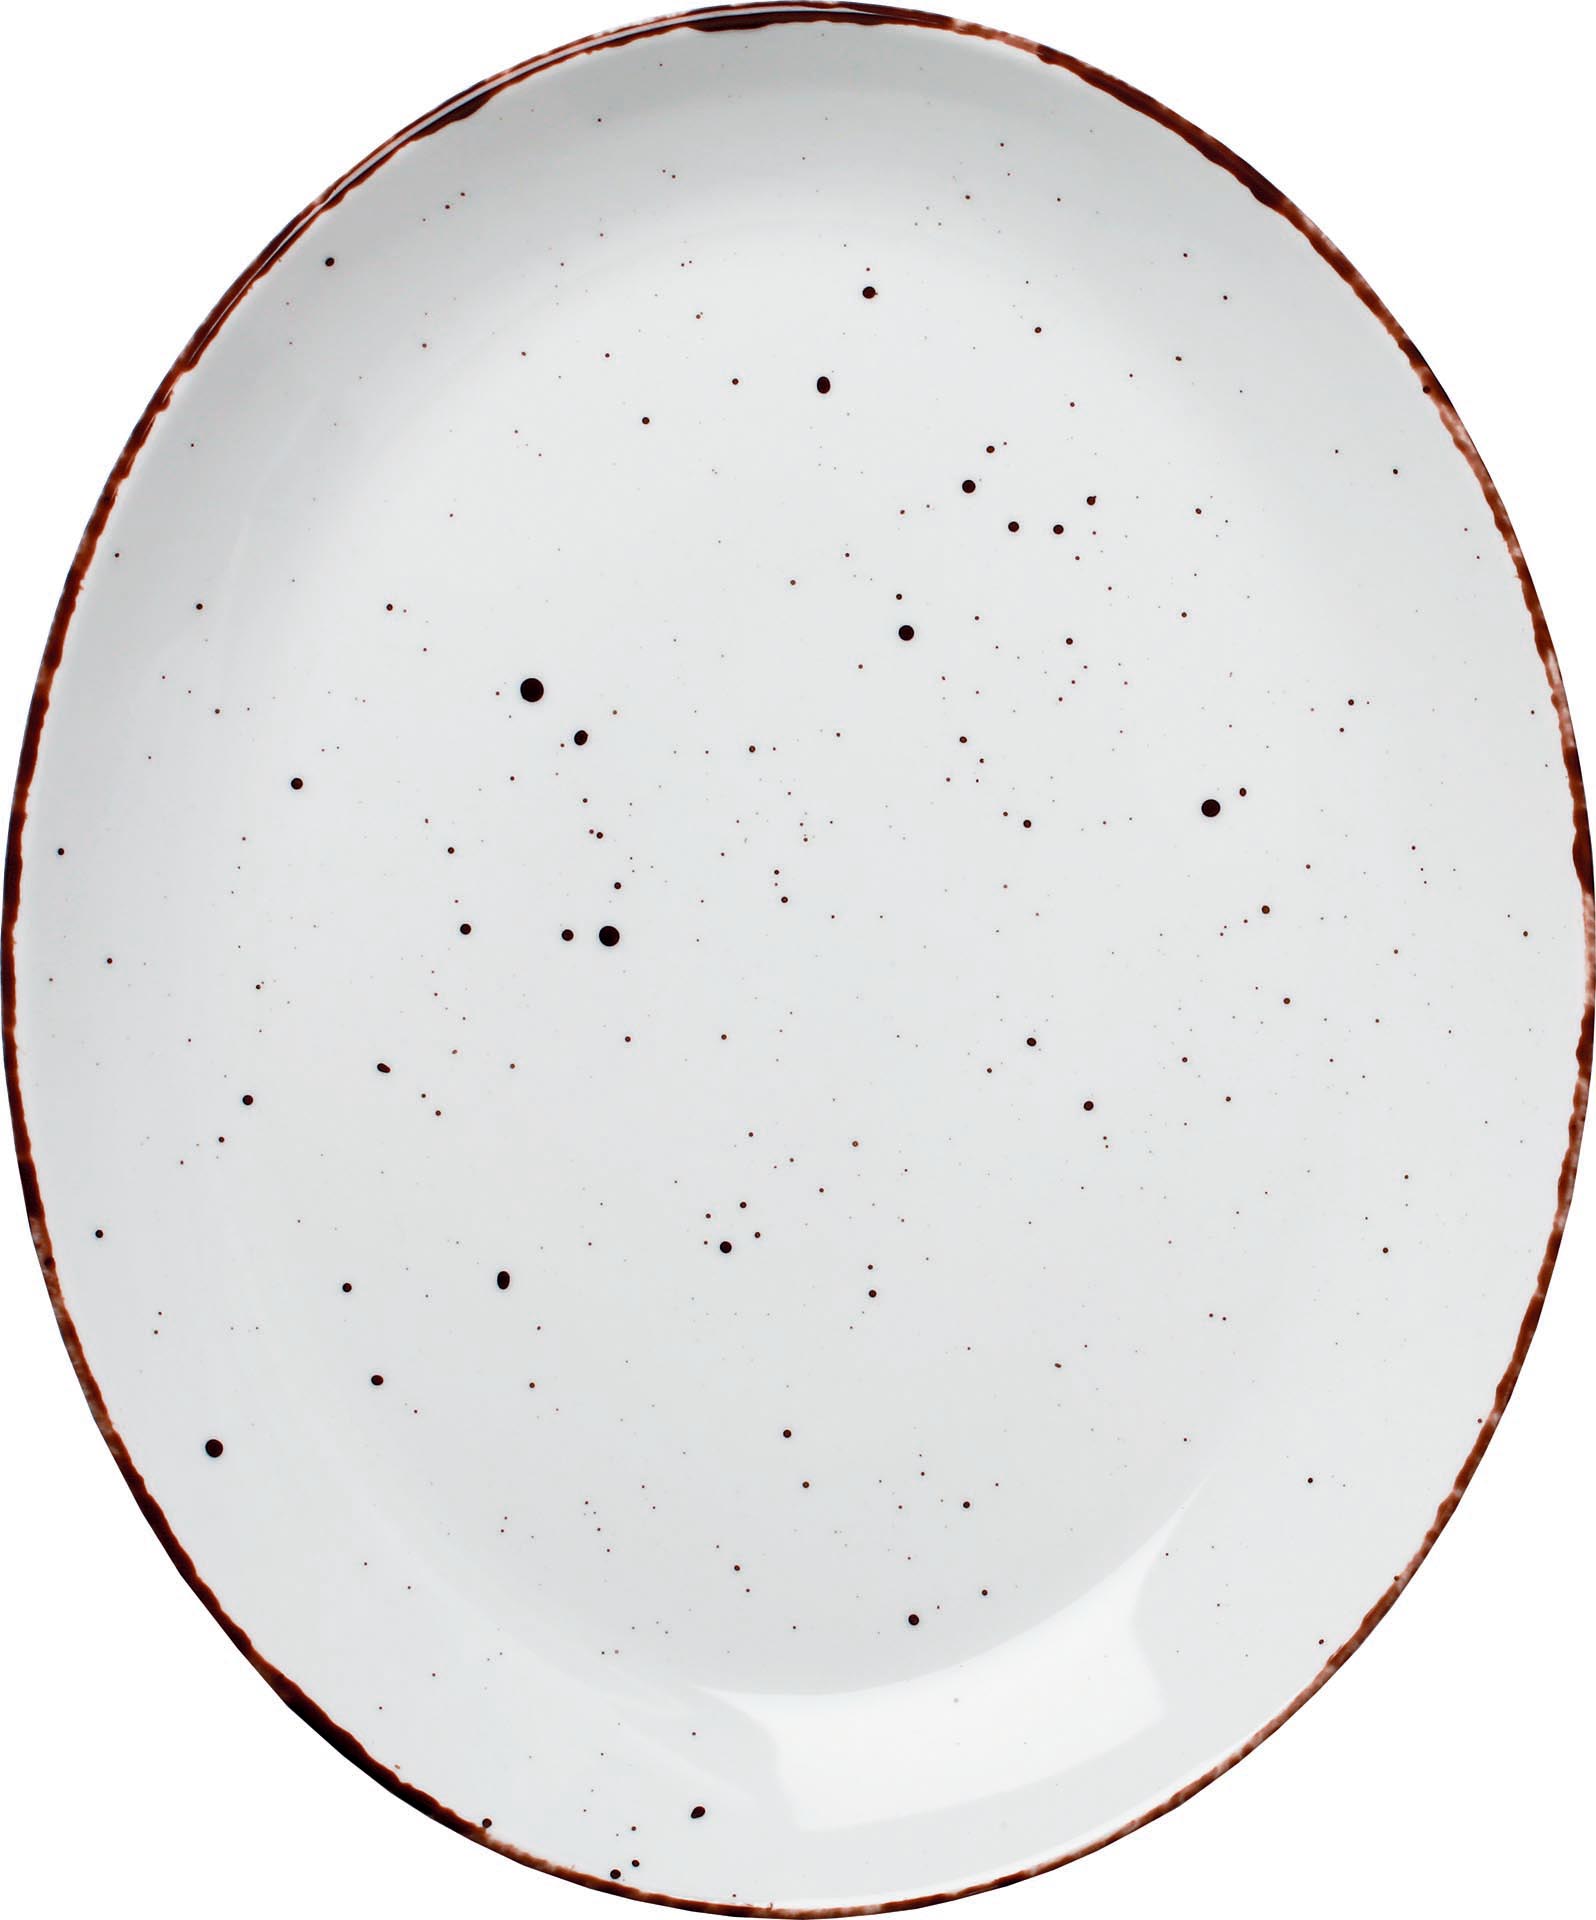 Granja weiß, Platte flach oval 31 x 25,5 cm